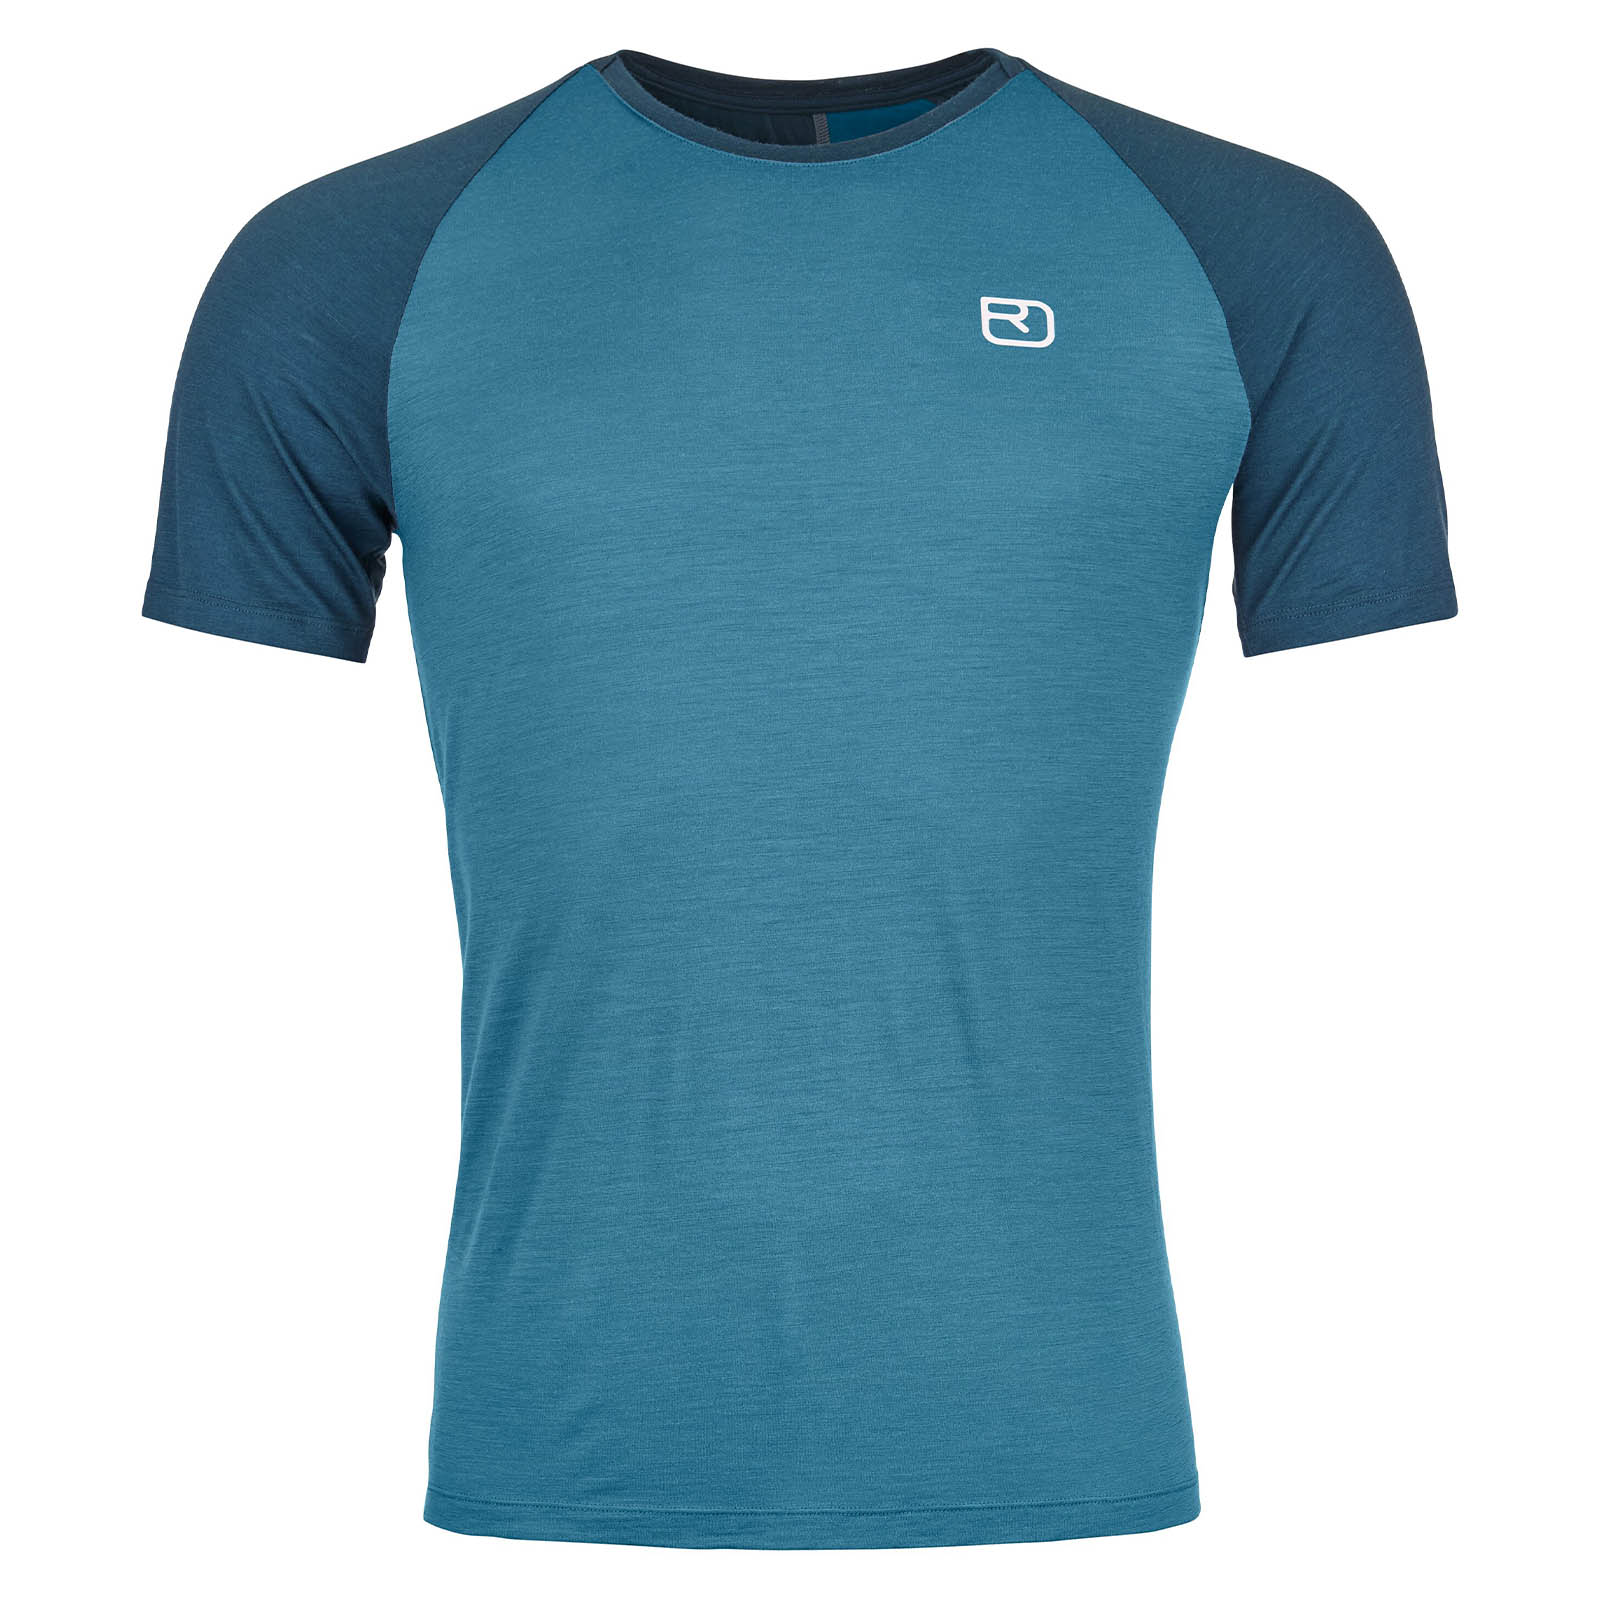 Ortovox 120 Tec Fast Mountain Herren T-Shirt blau